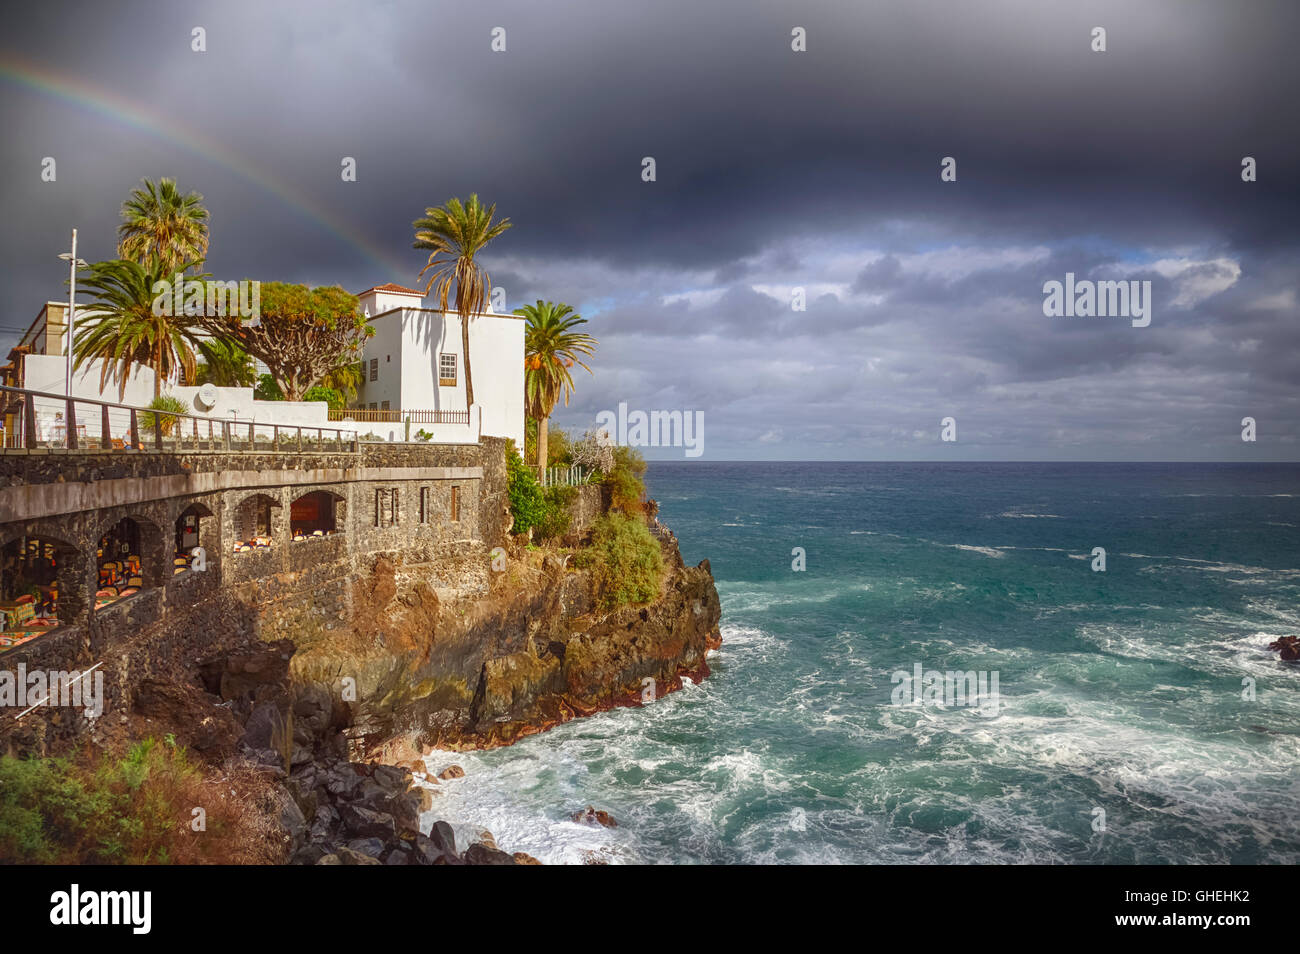 Hôtel de ville sur les rochers et les vagues de la mer sous un arc-en-ciel à Puerto de la Cruz, Tenerife, Espagne Banque D'Images